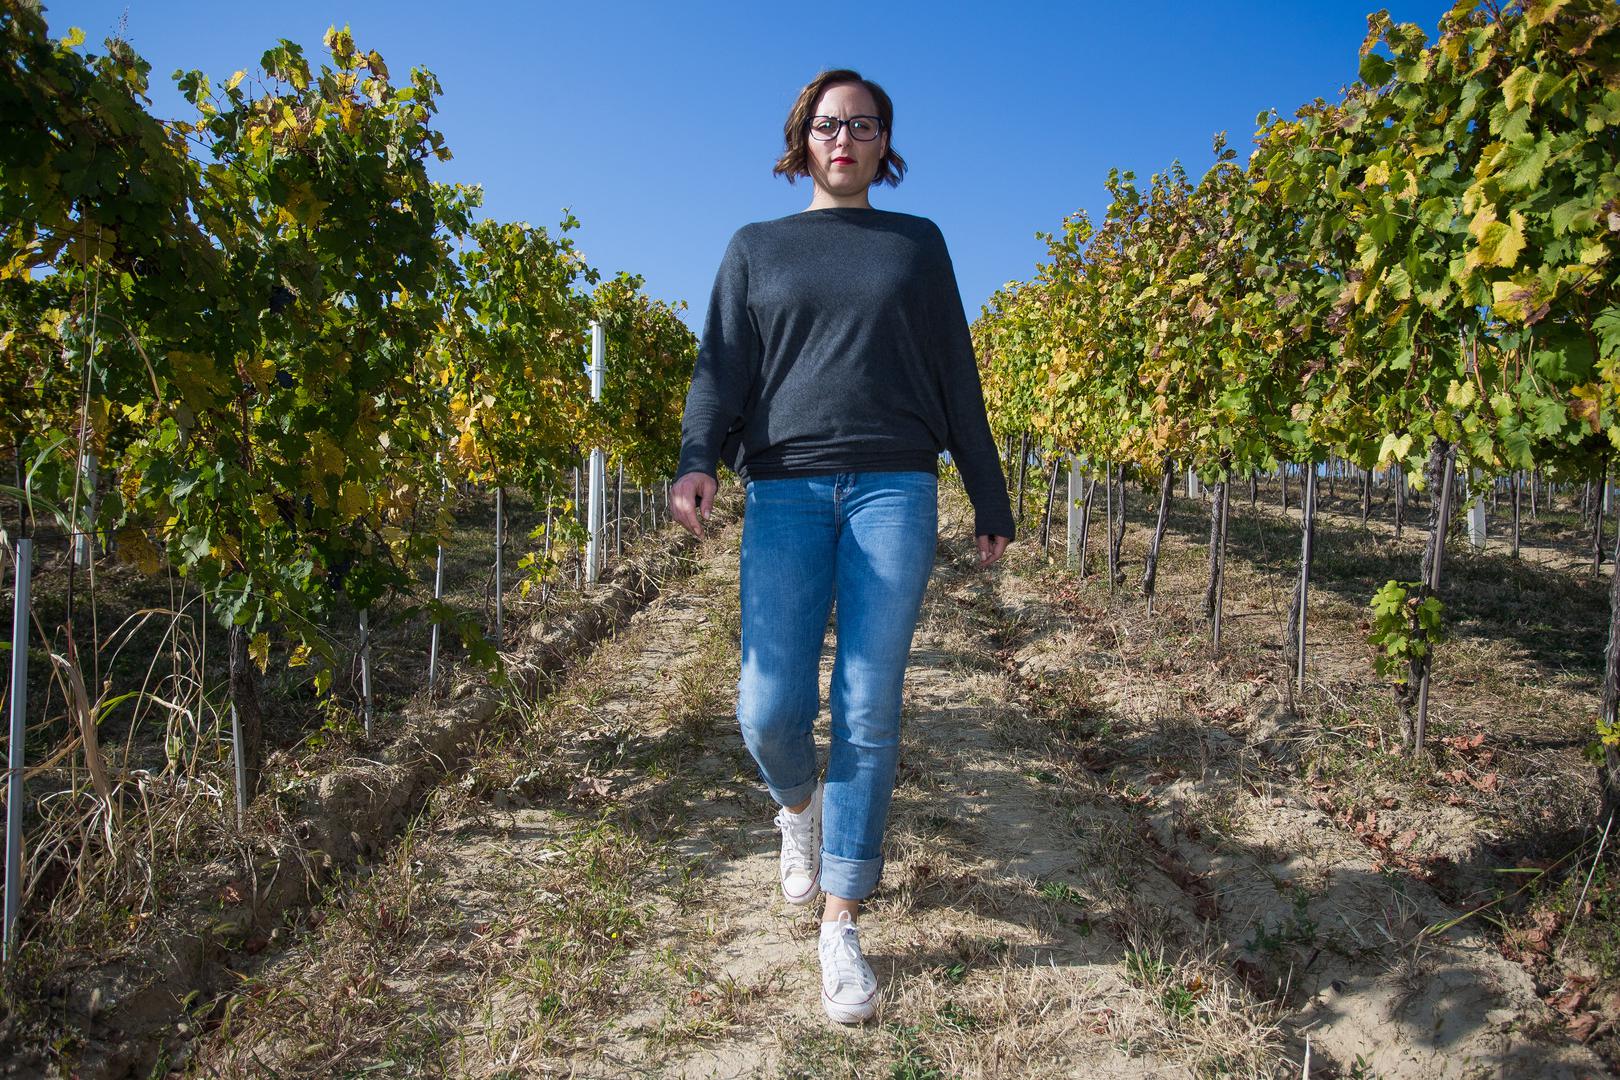 Kristina vodi cijeli proces: od vinograda preko vinarije do prodaje